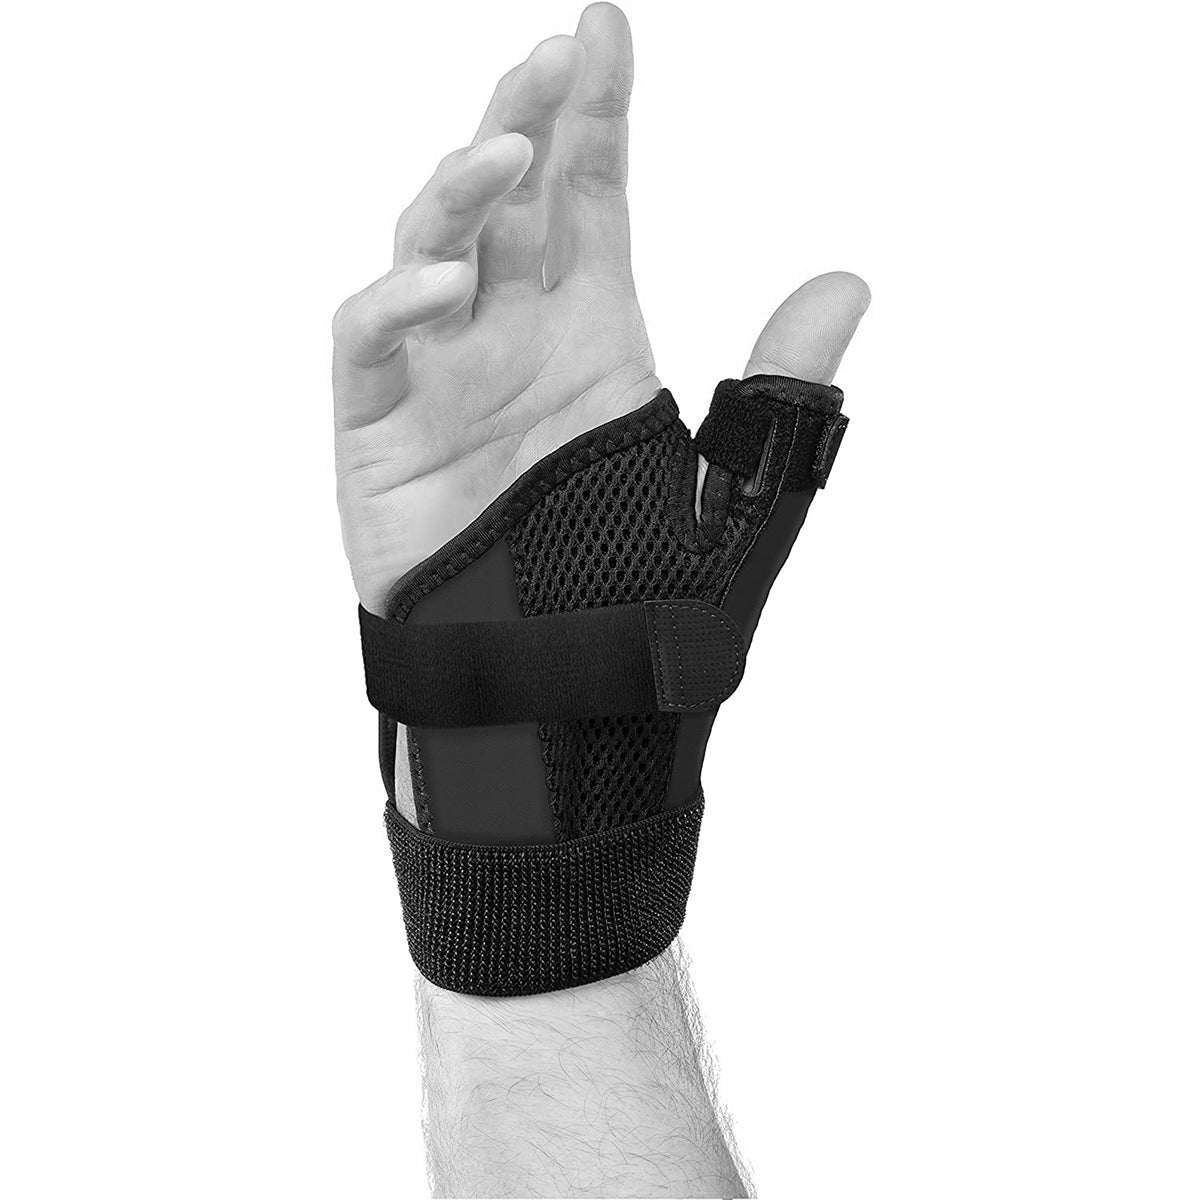 Mueller Reversible Wrist Brace with Splint, Black, One Size Fits